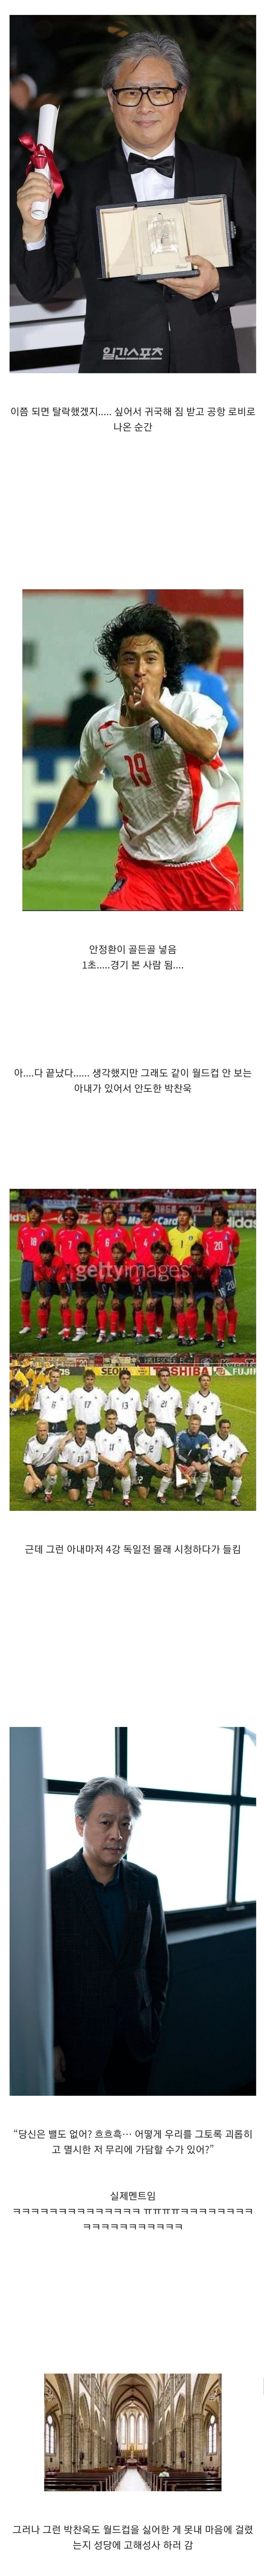 2002년 월드컵 당시 단 1초도 경기를 보지 않았던 박찬욱.jpg